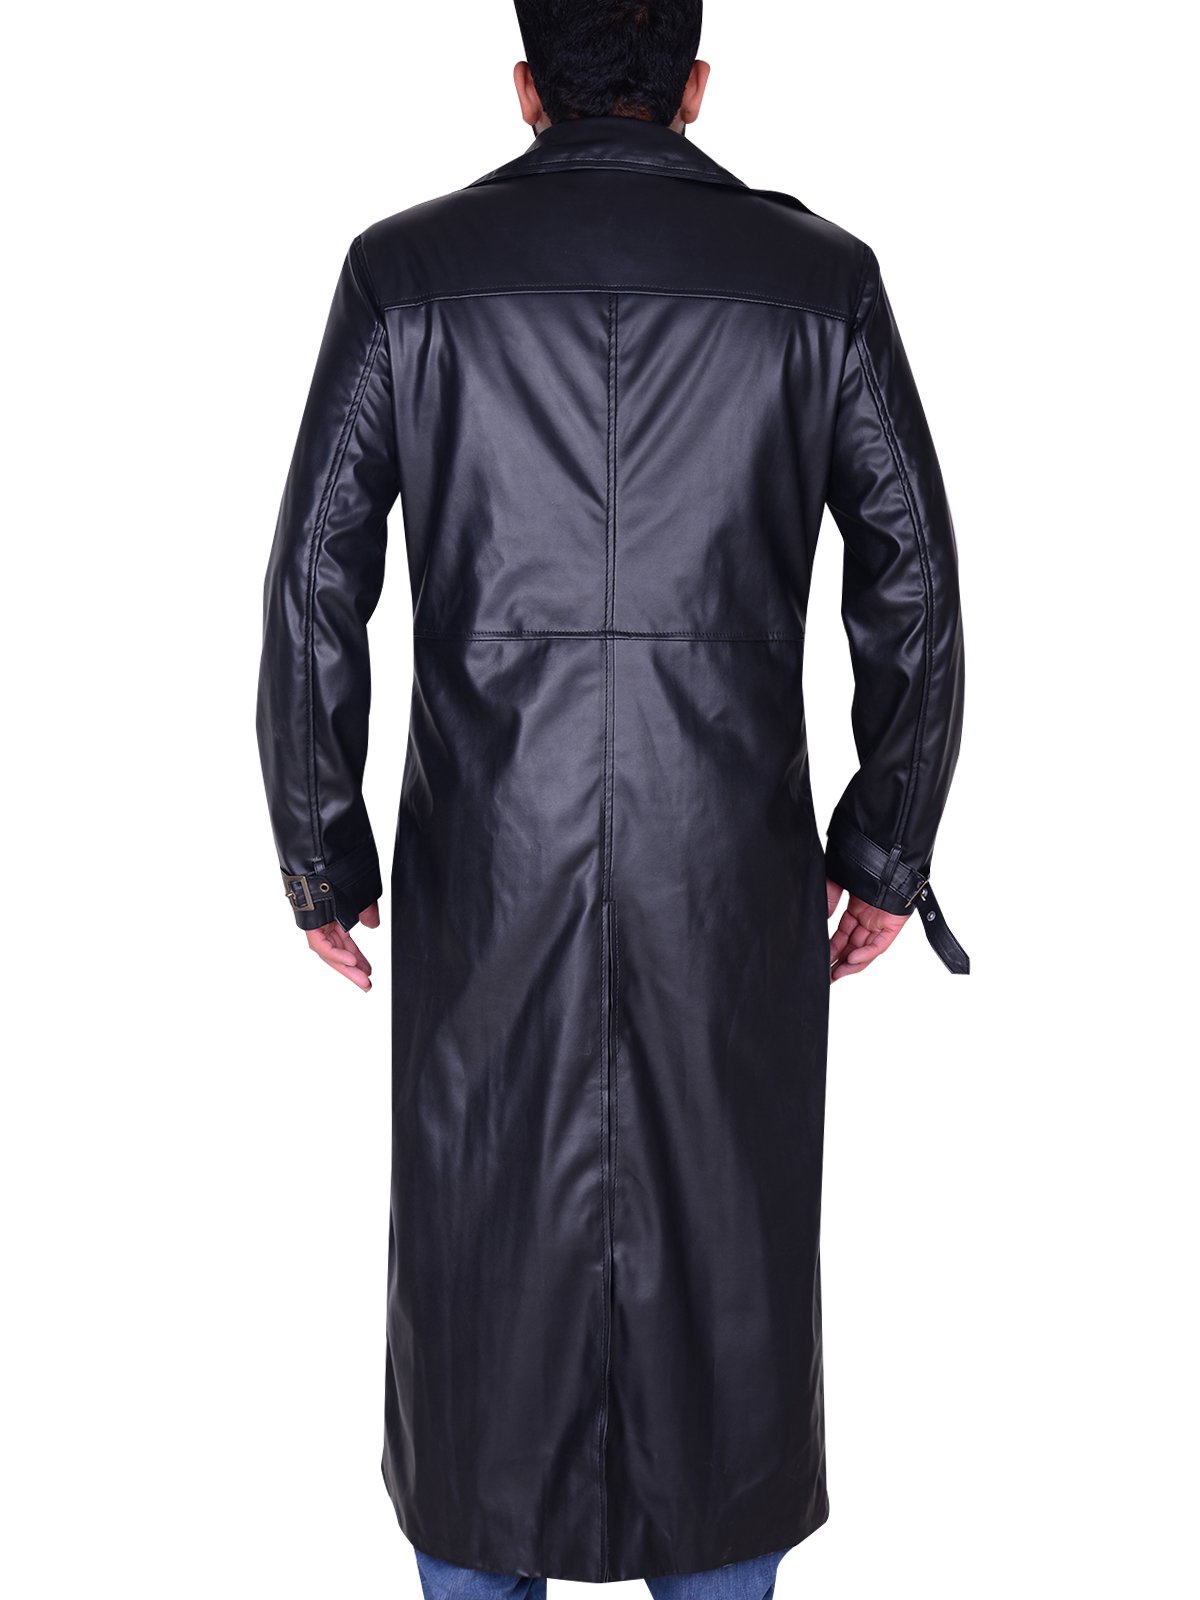 Albert Wesker Resident Evil 5 Black Trench Coat- RockStar Jacket